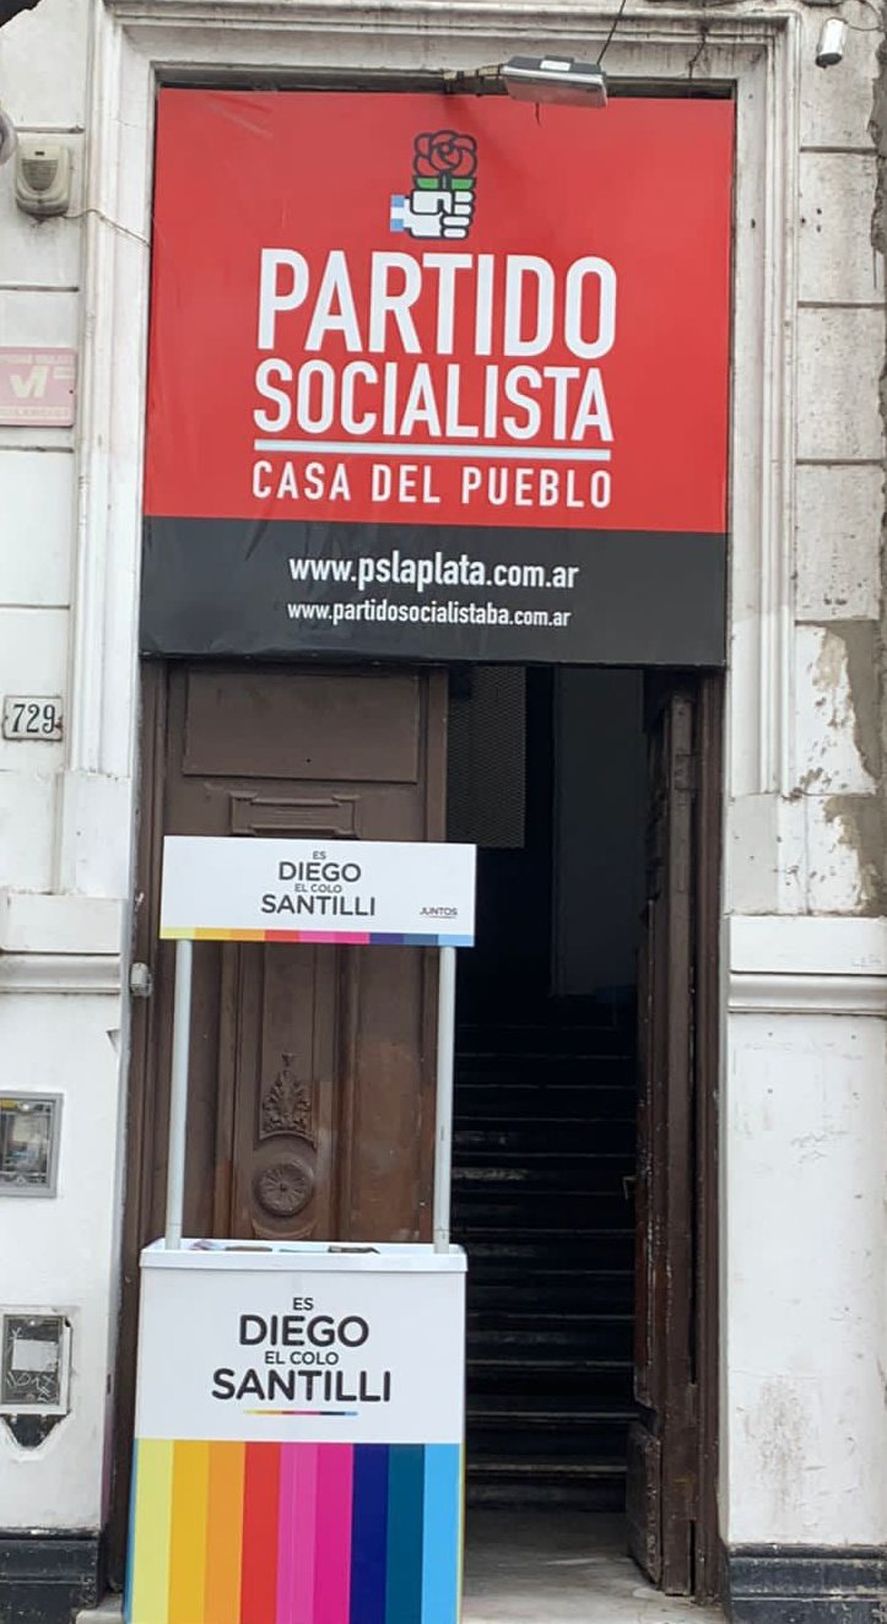 El Partido Socialista va con Juntos y apoya a Diego Santilli en la Provincia de Buenos Aires, y esto, si bien era sabido, sorprendió a muchos 